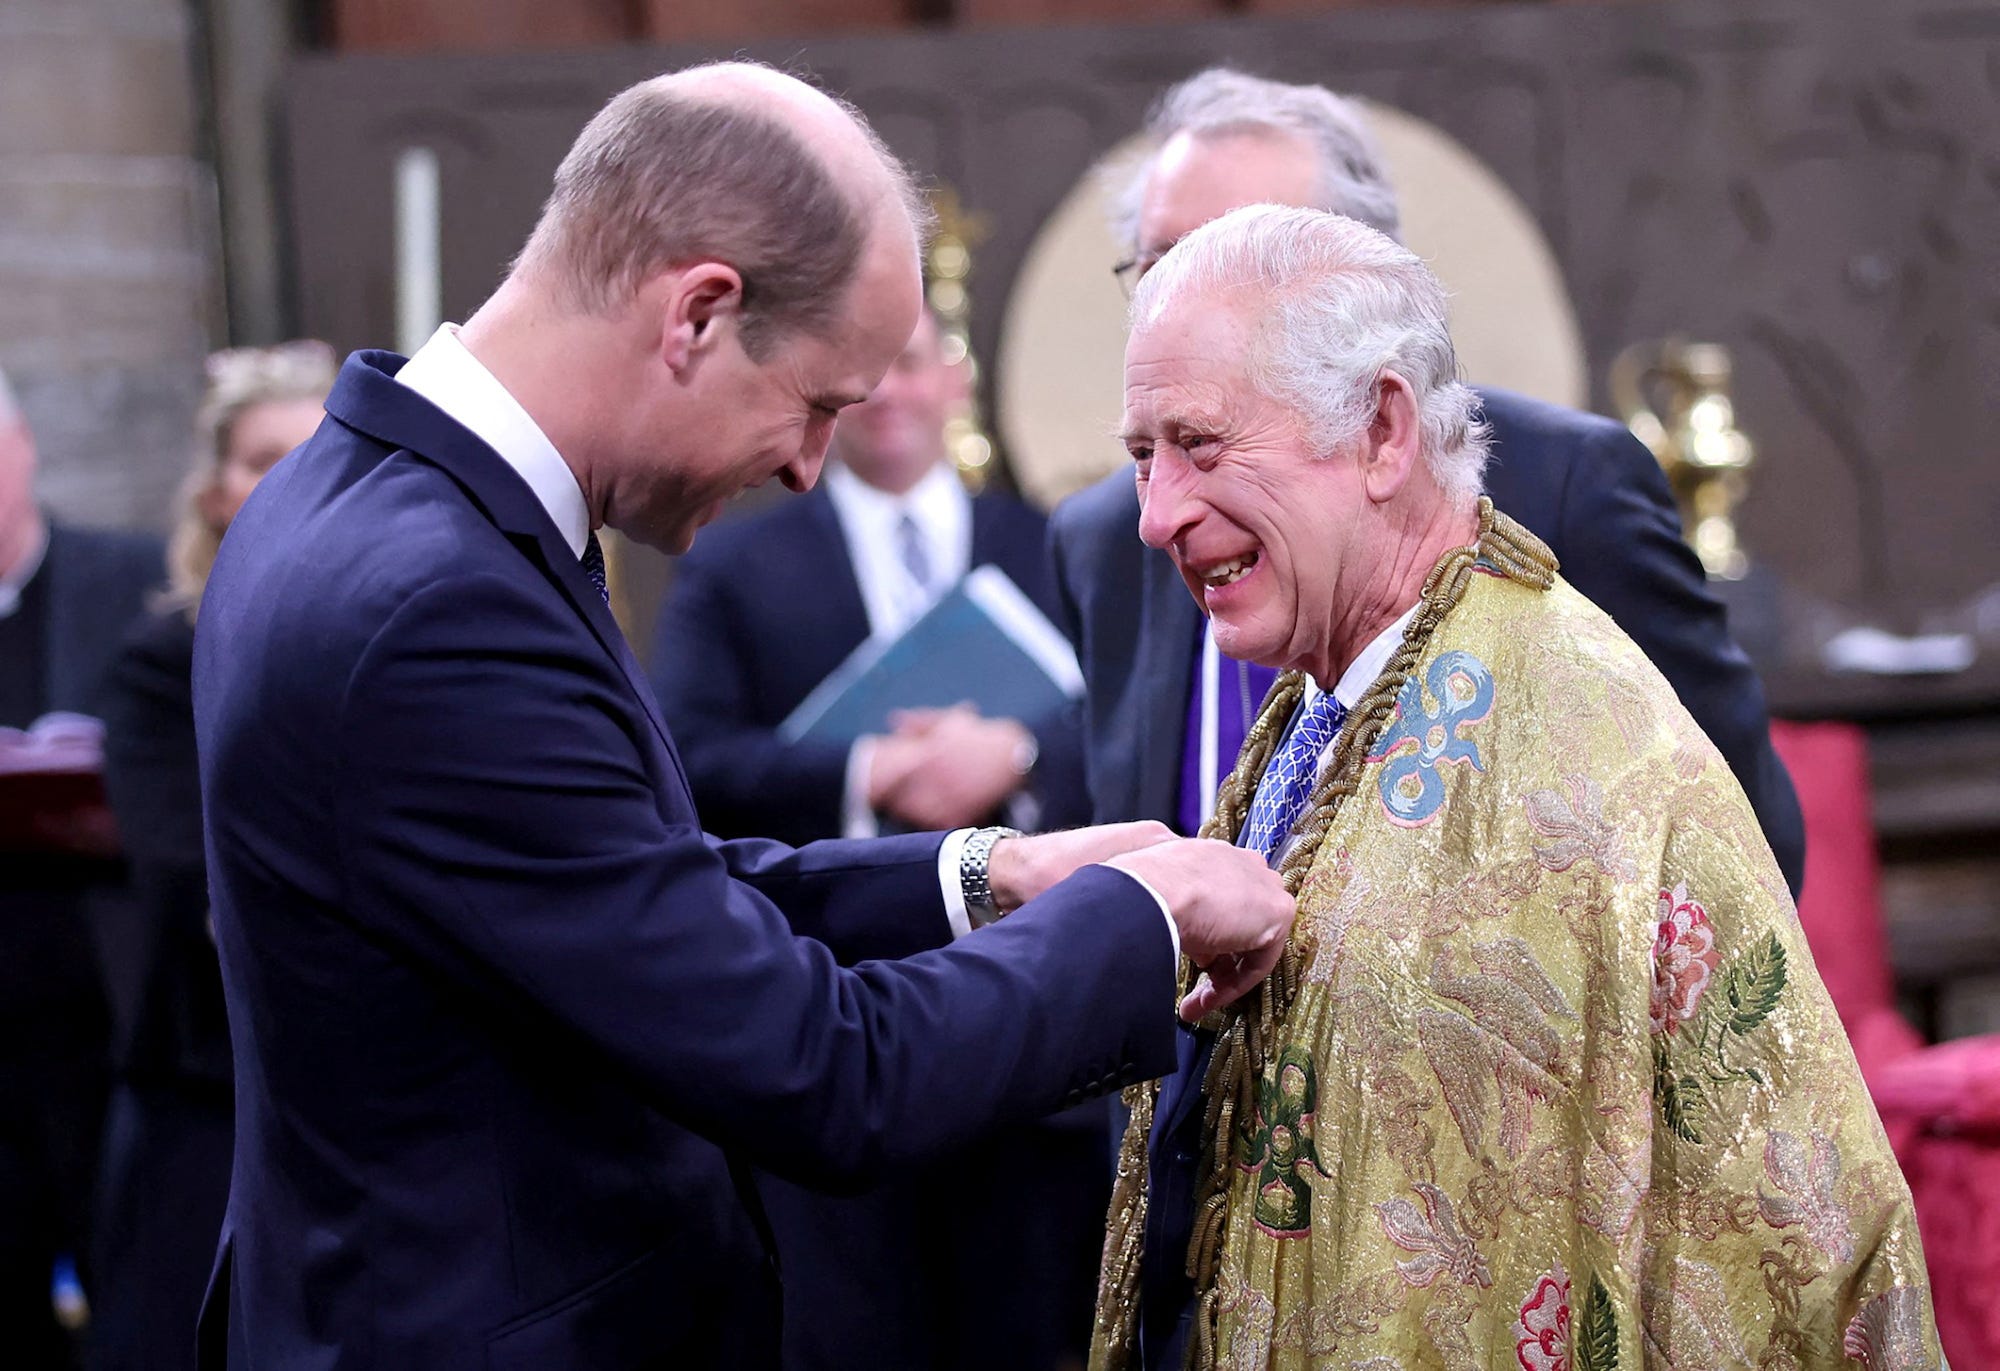 König Charles lacht, als Prinz William ihm etwas an die Brust heftet.